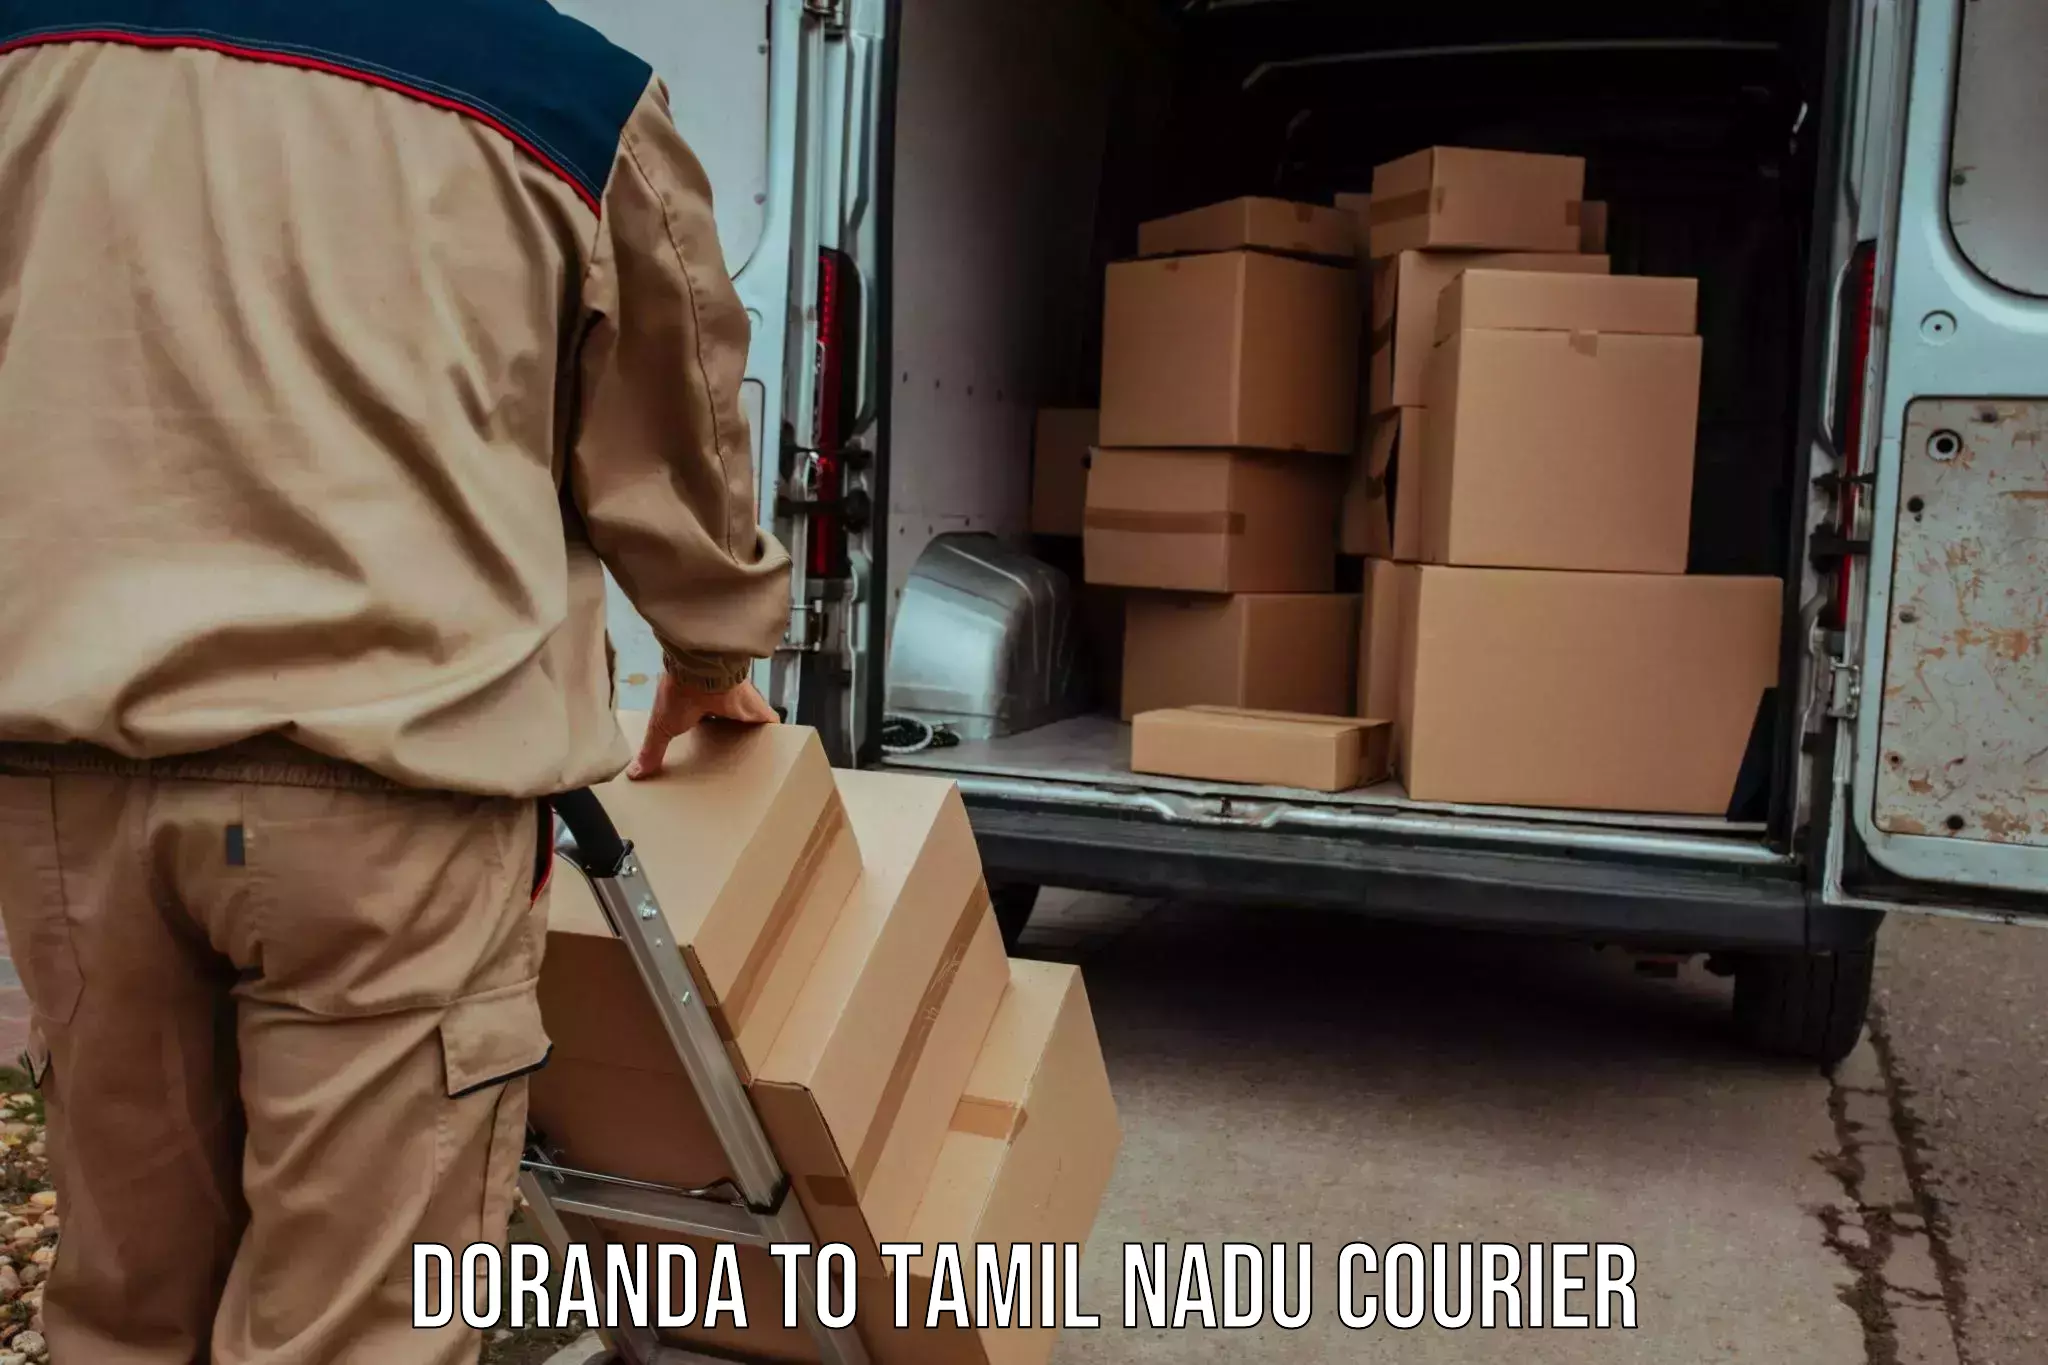 Next day courier Doranda to Tirupur